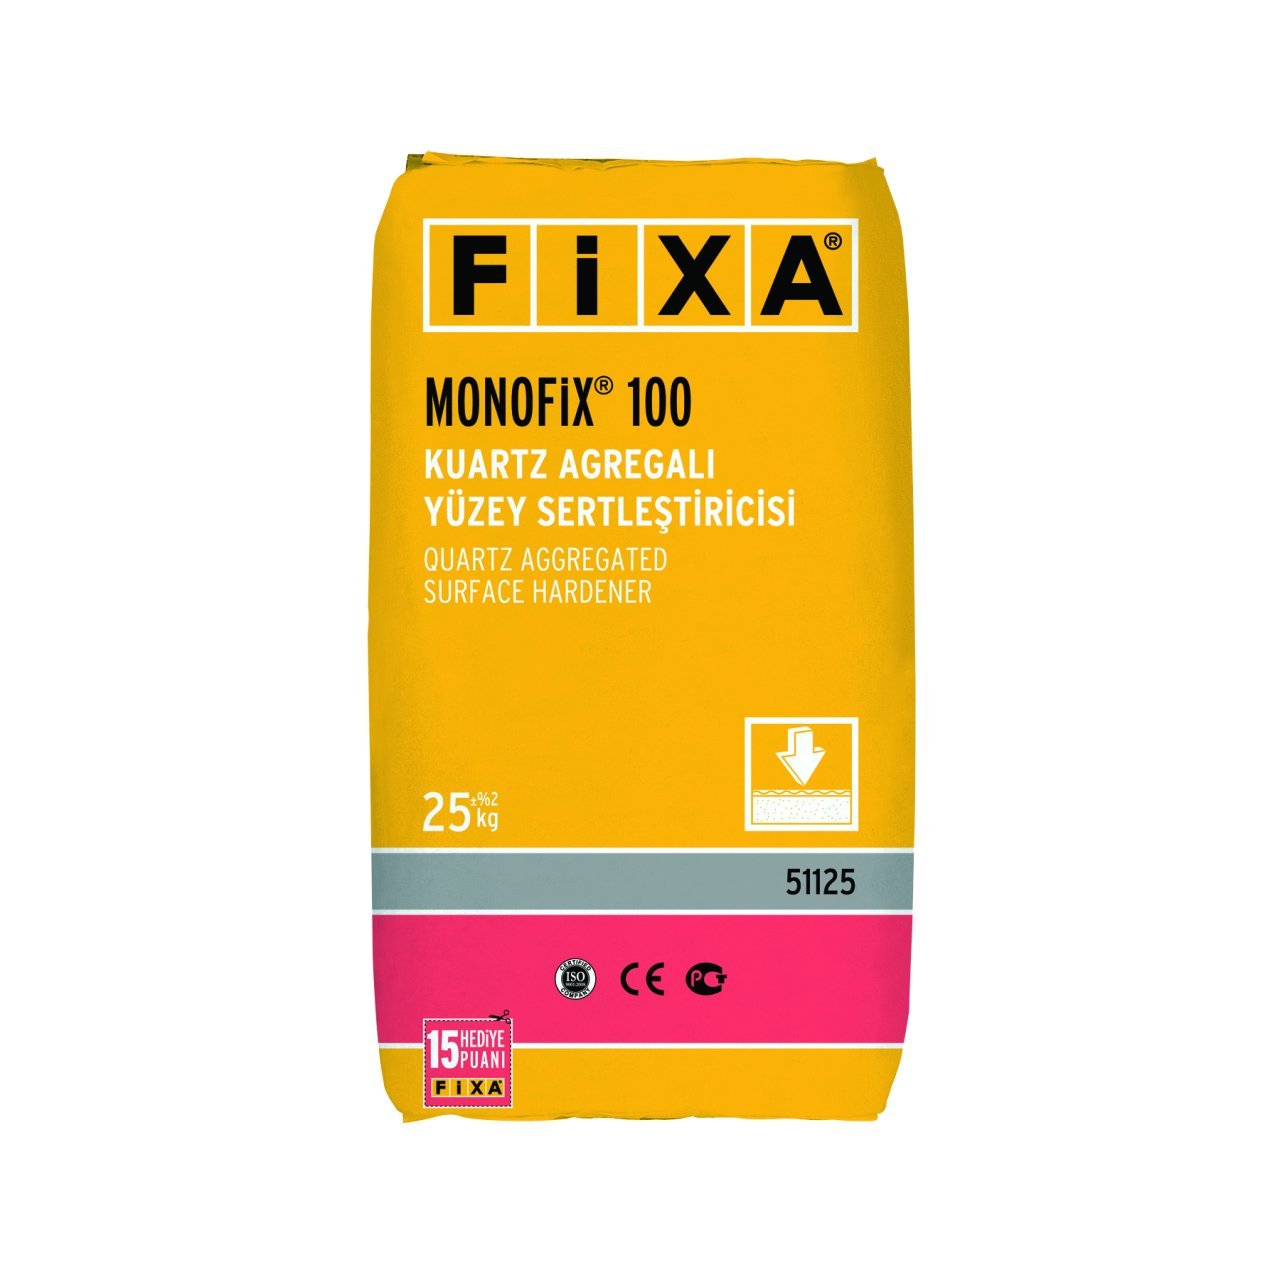 Fixa Monofix 100 Yüzey Sertleştirici Gri 25 Kg